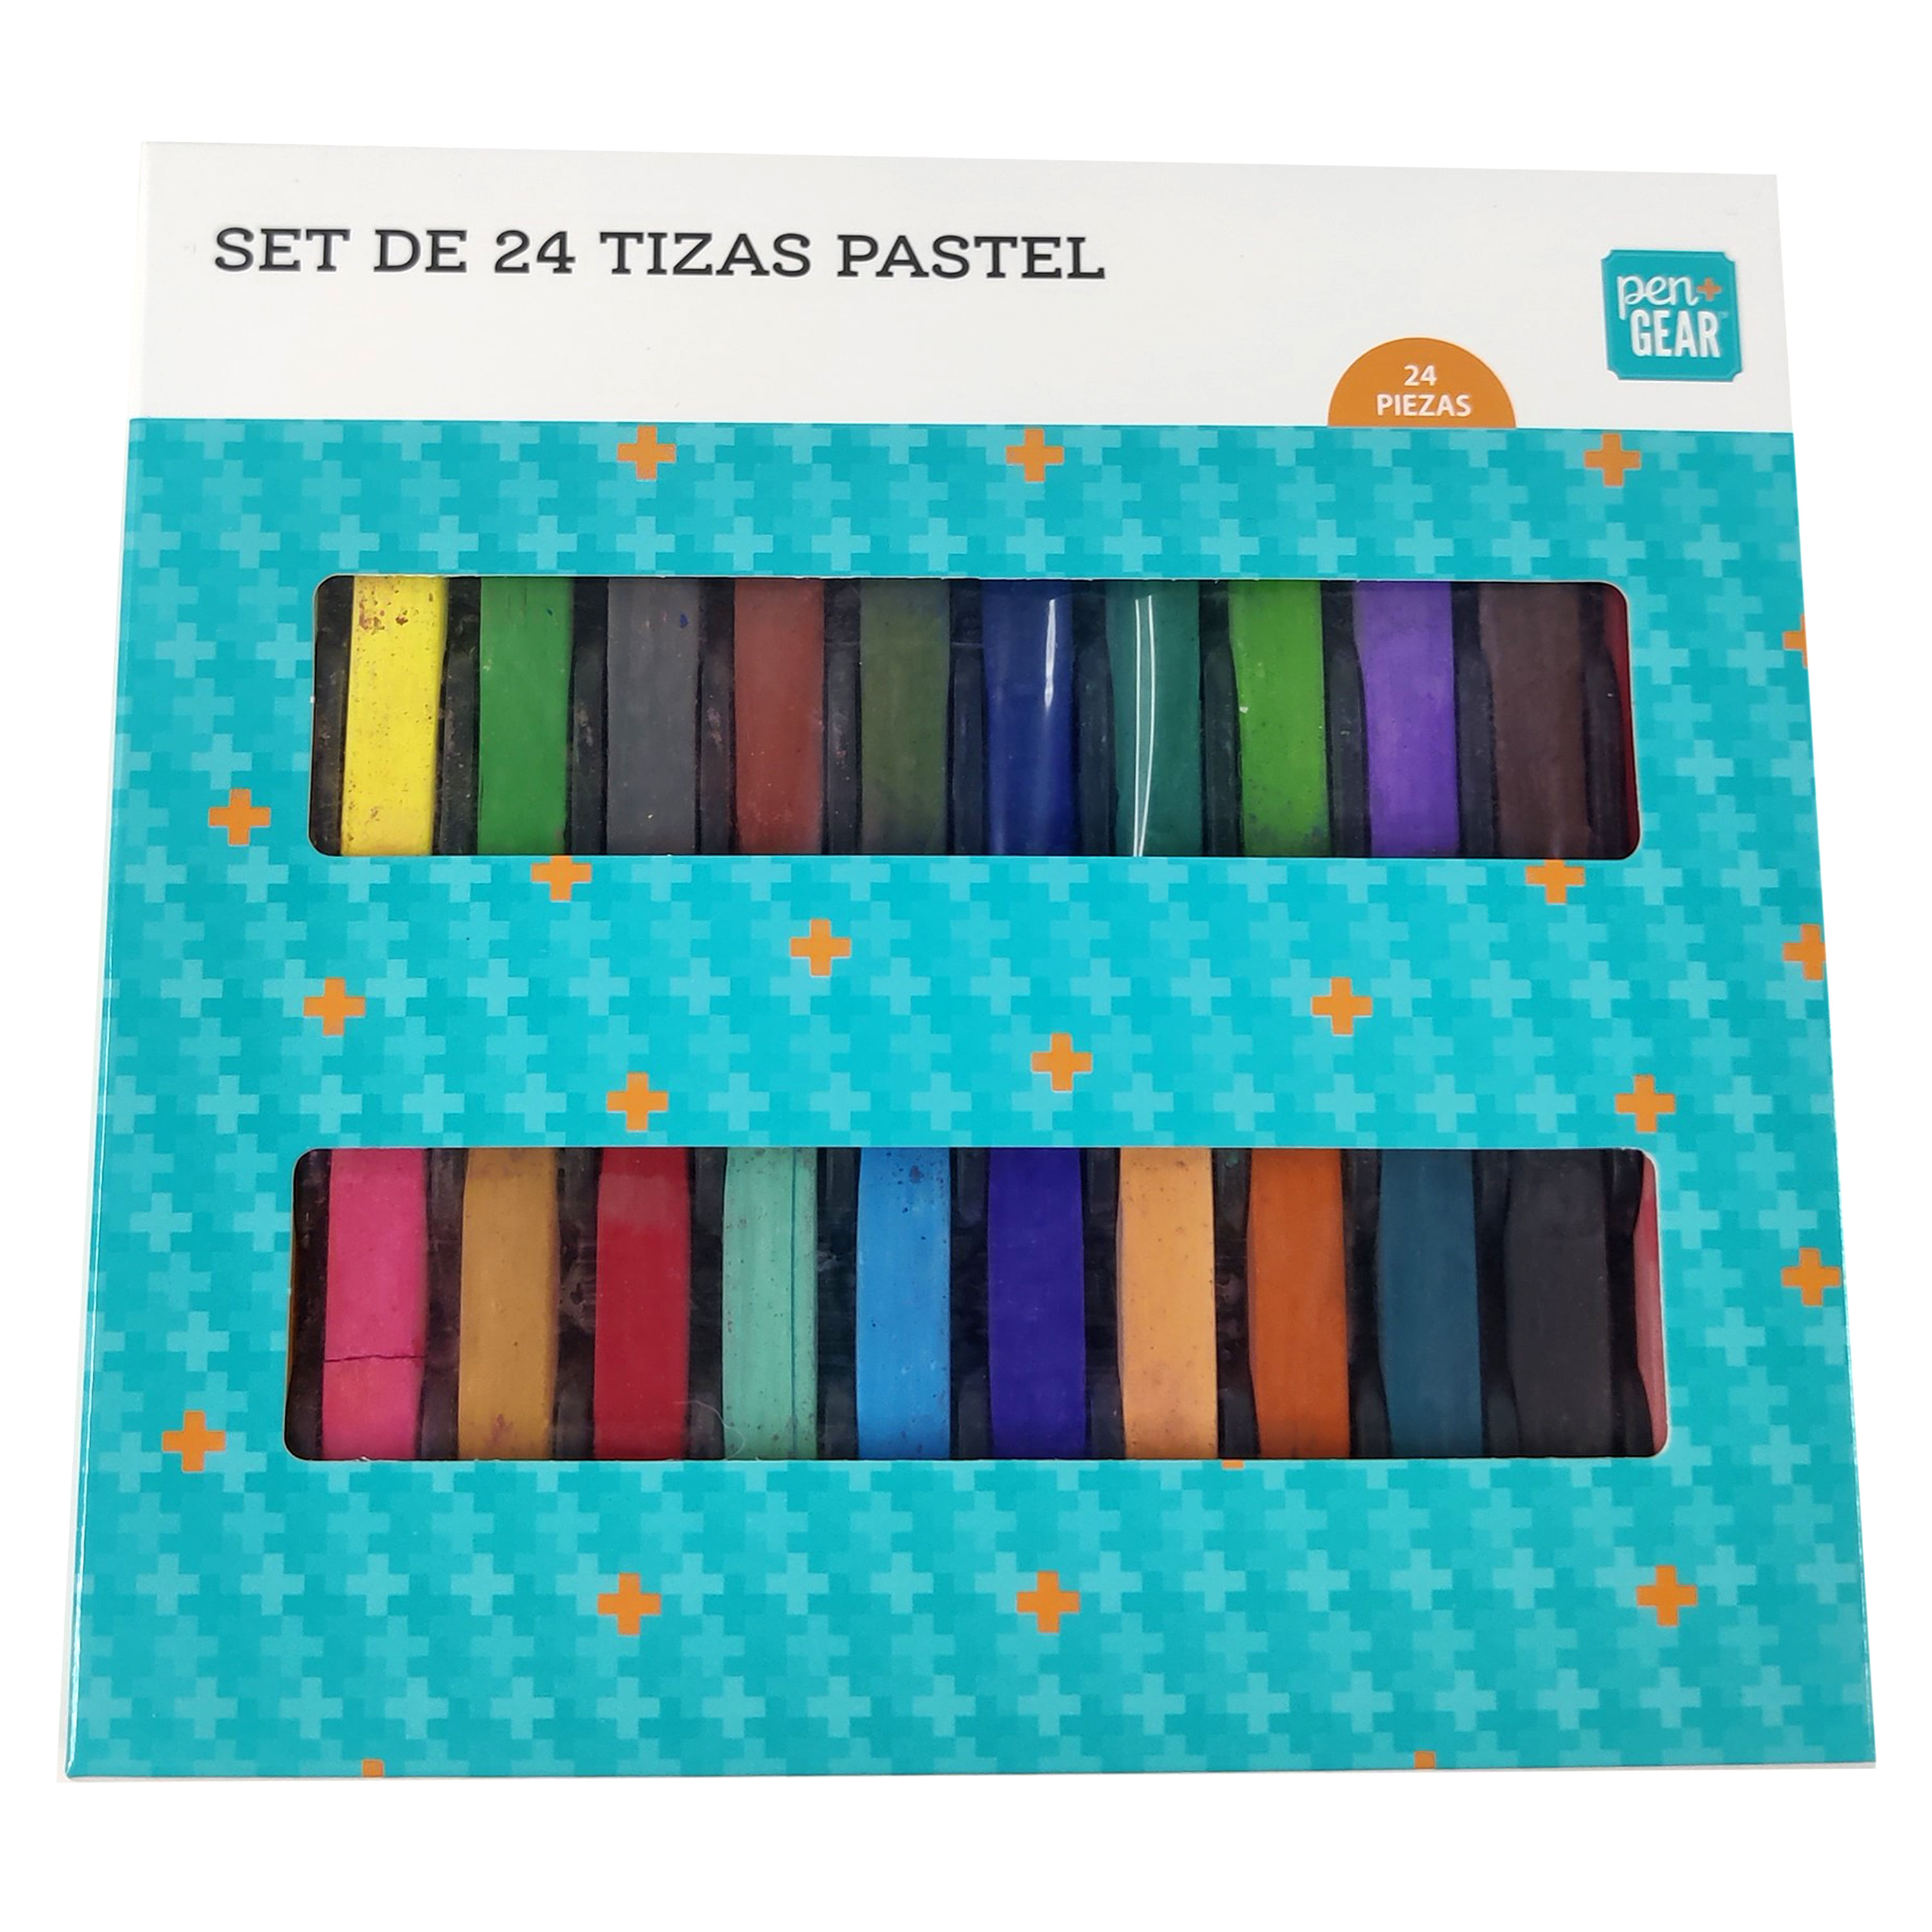 Comprar Set tizas pastel, Pen+Gear, 24 piezas. Modelo: DY04255